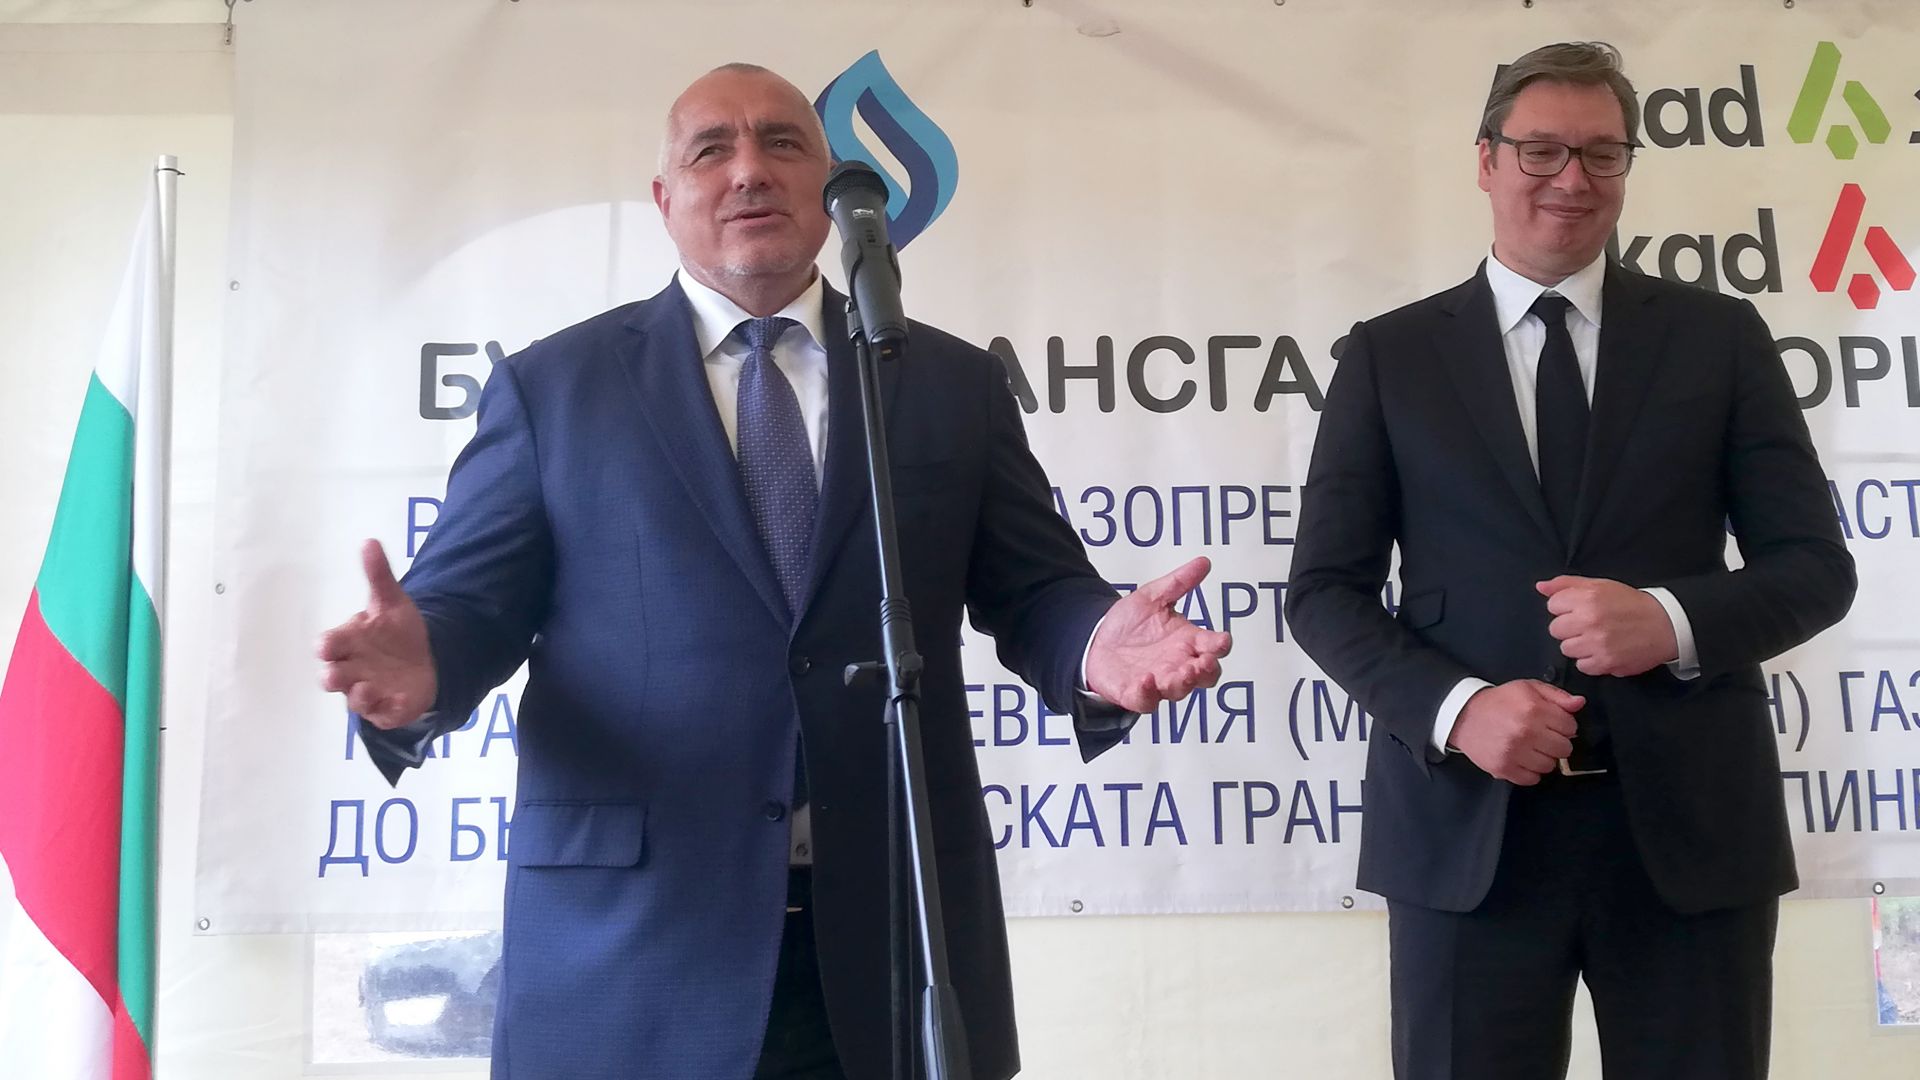 Борисов пред Вучич: "Балкански поток" трябва да e готов до края на годината (снимки, видео)